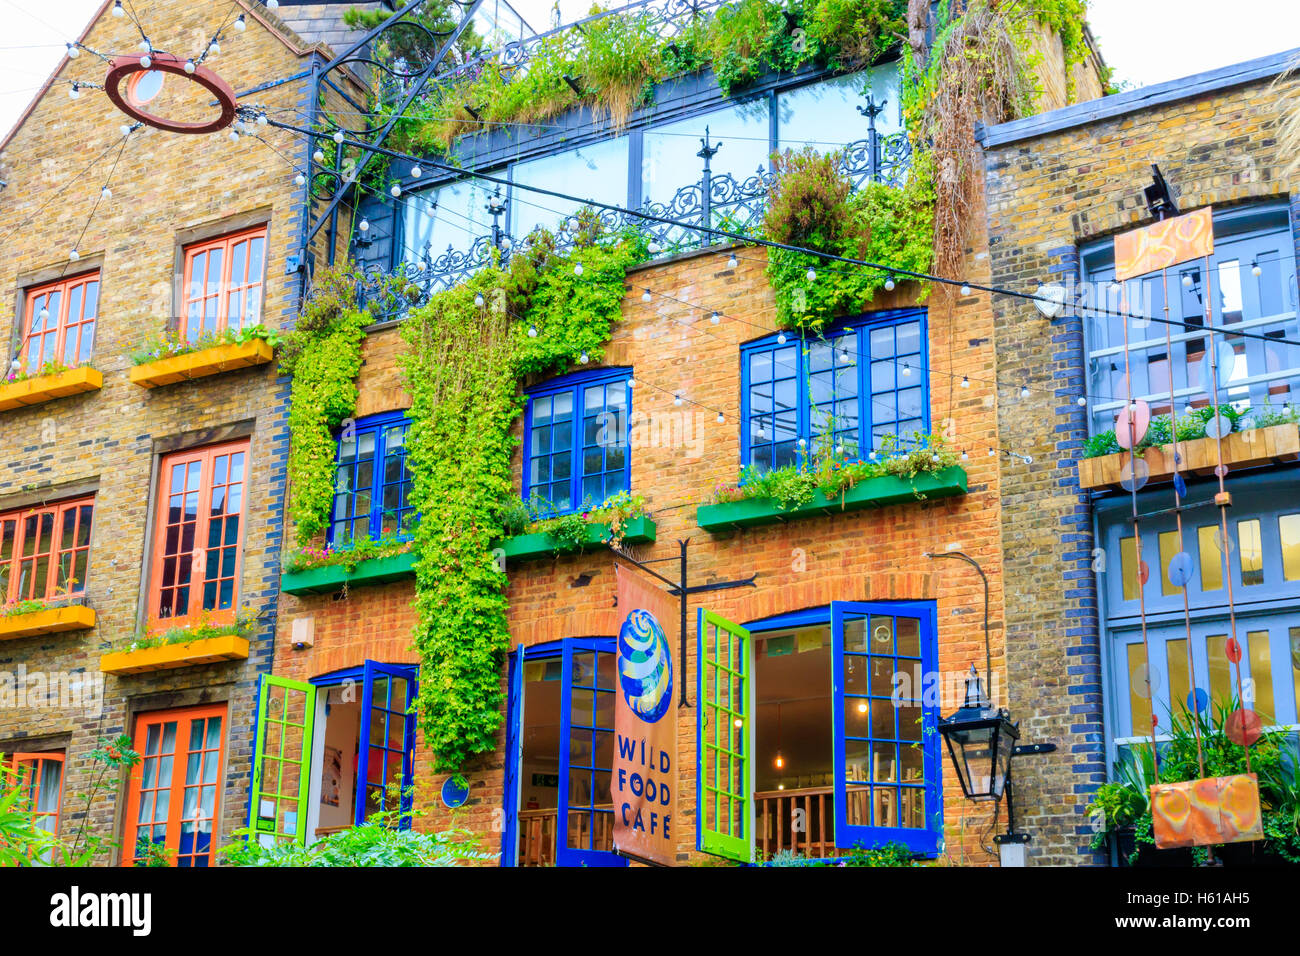 Londres, UK - 2 août 2016 - Neal's Yard, une petite allée à Covent Garden area Banque D'Images